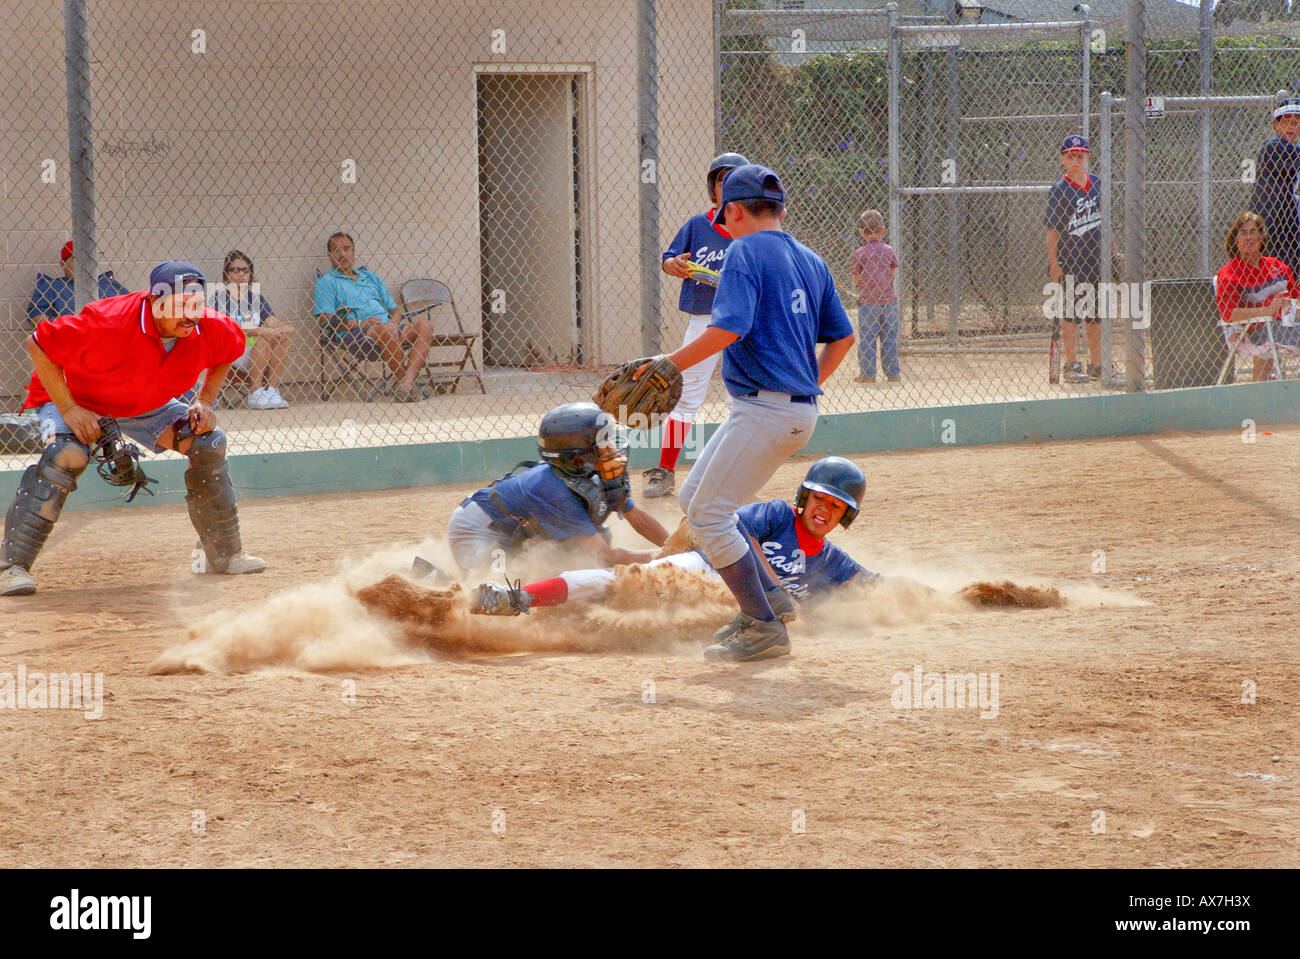 La petite ligue de baseball player glisse dans la plaque pendant la partie non libérée Banque D'Images